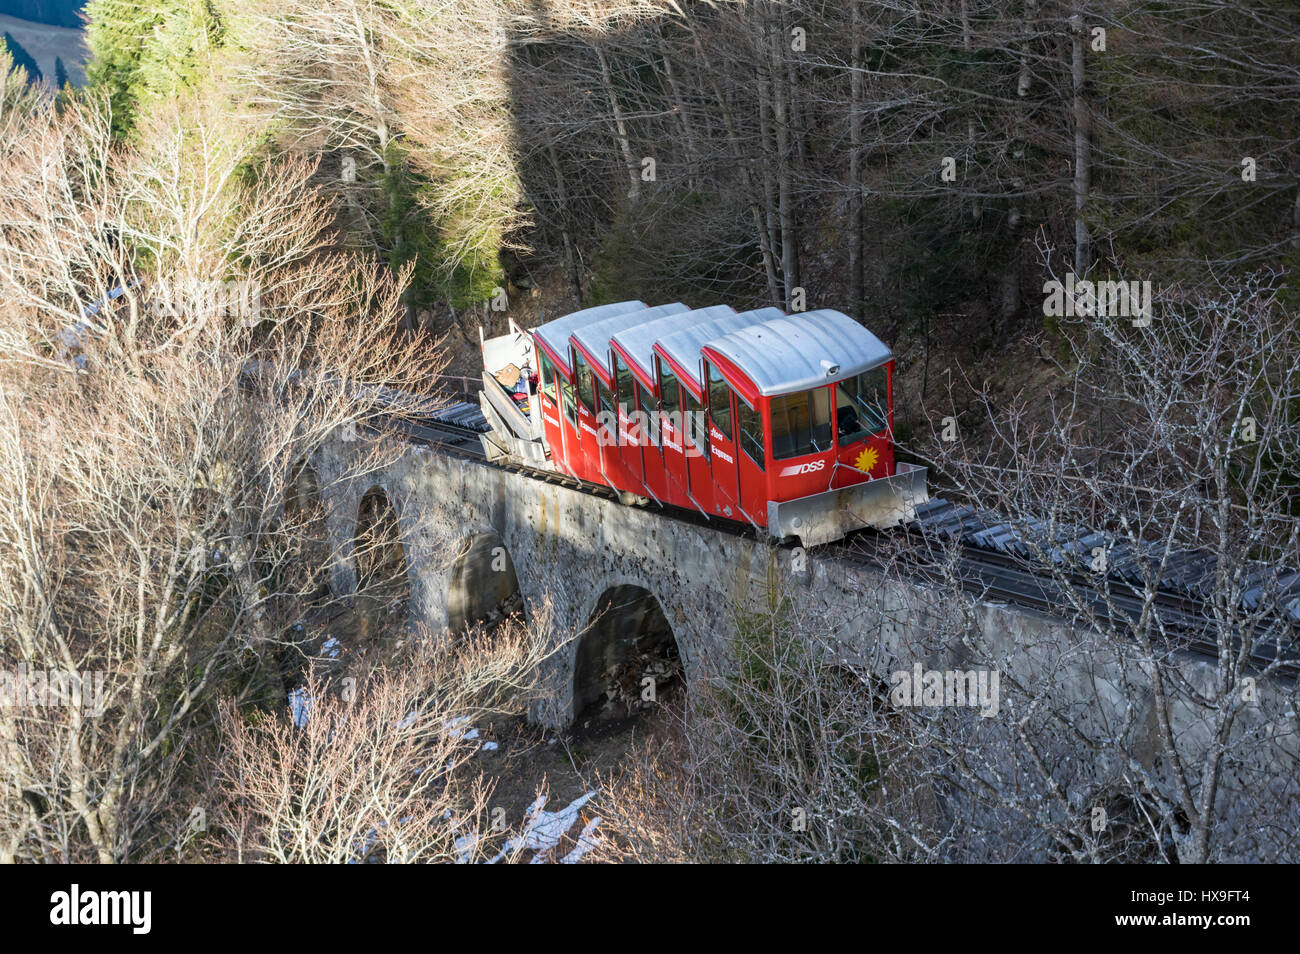 Voiture rouge de l'ancien funiculaire Schlattli-Stoos touchant à sa gare supérieure sur un viaduc raide. Stoos, Schwyz, Suisse. Banque D'Images